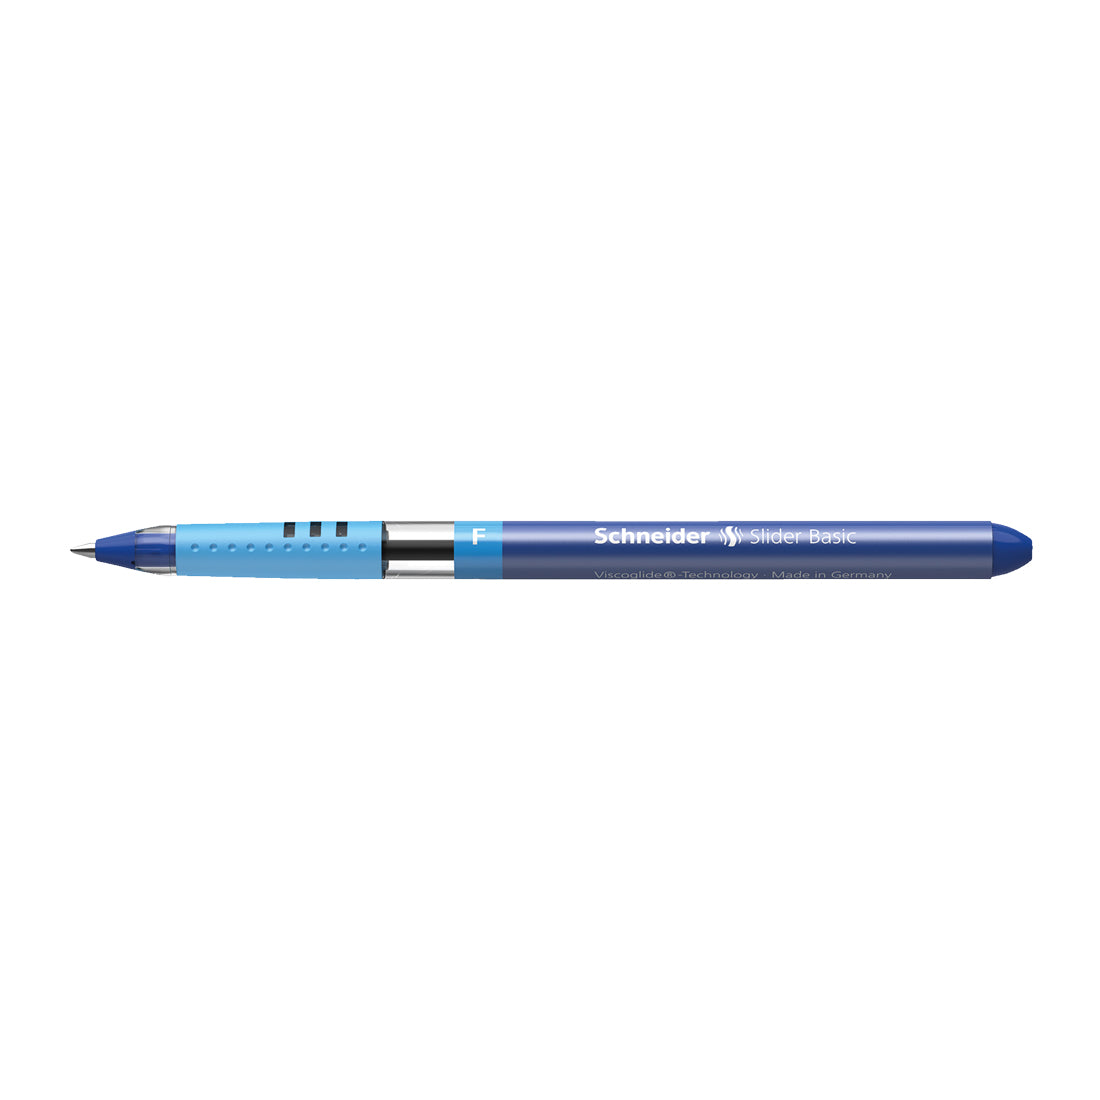 Slider BASIC Ballpoint Pens F, Box of 10#ink-colour_blue